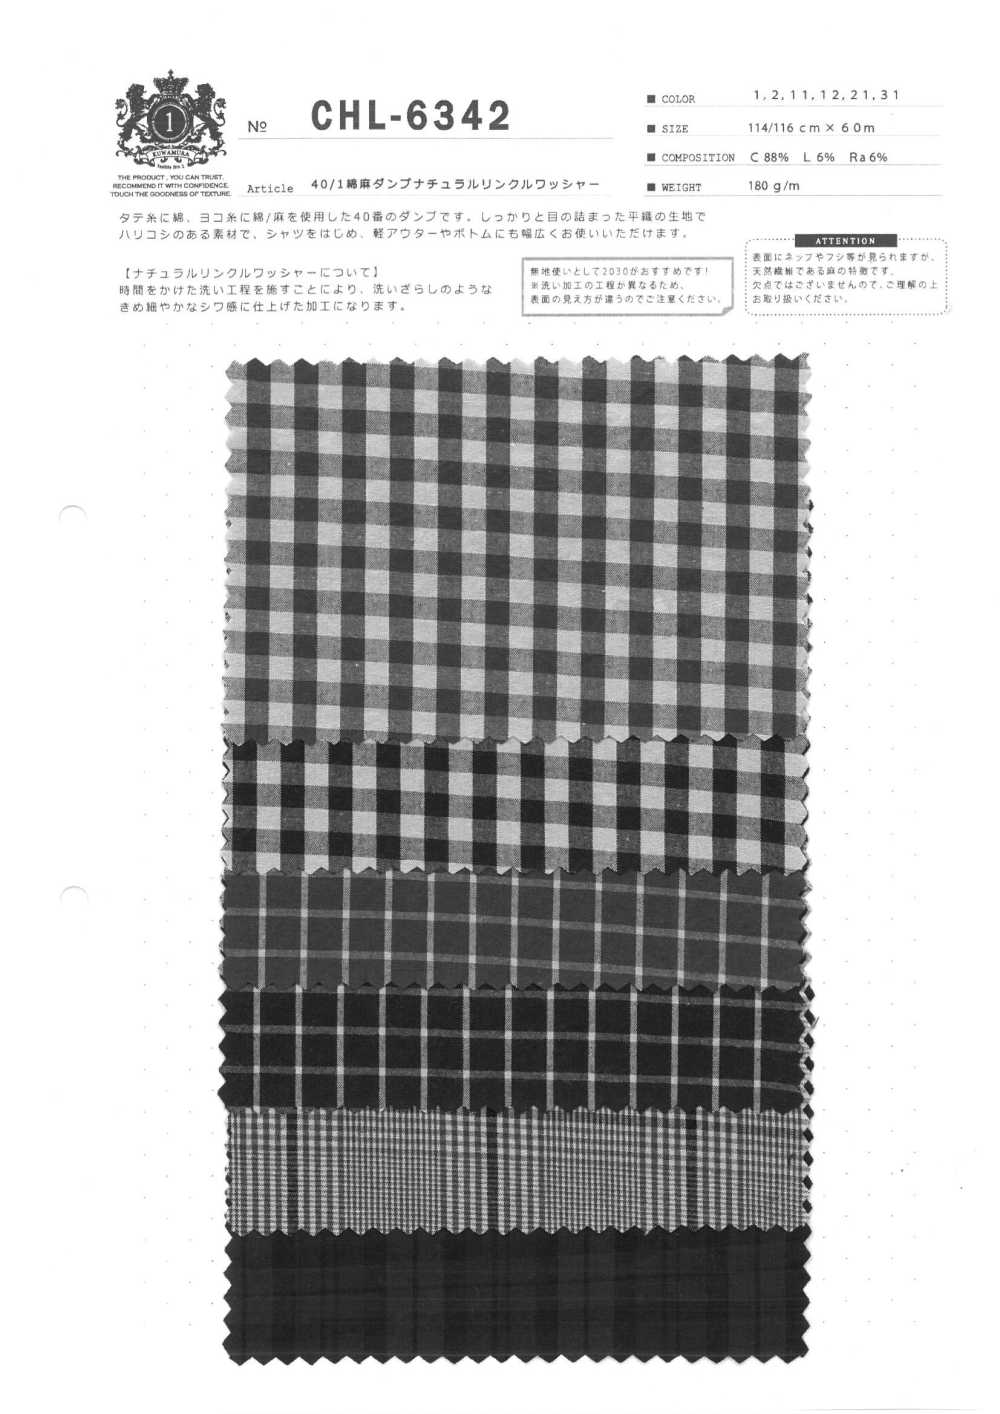 CHL-6342 40/1 Leinen-Daunendichtes, Natürliches Knitterwaschverfahren[Textilgewebe] Kuwamura-Faser